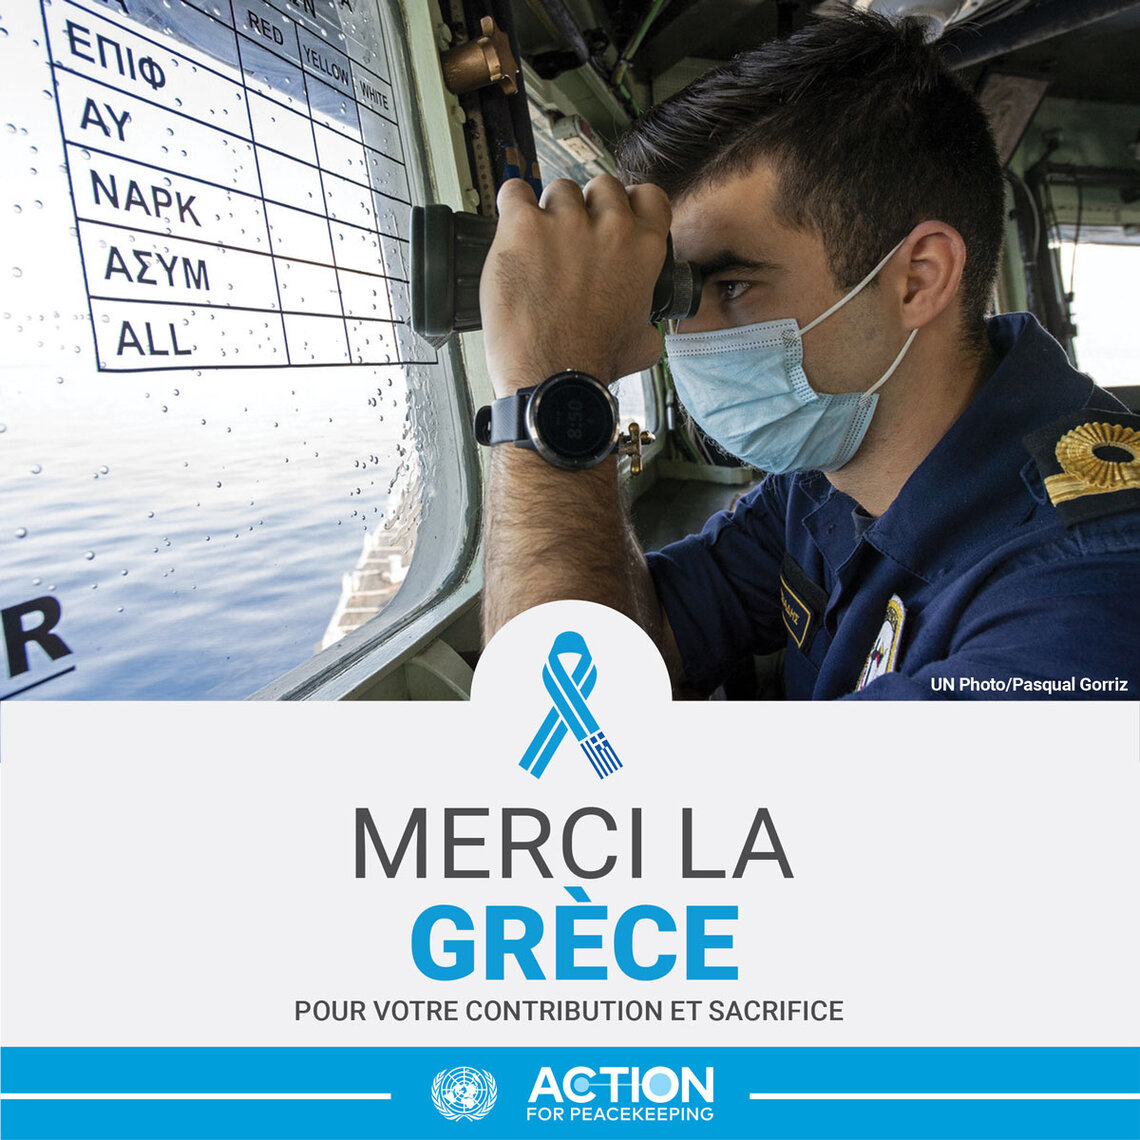 Casque bleu grec en mission de surveillance